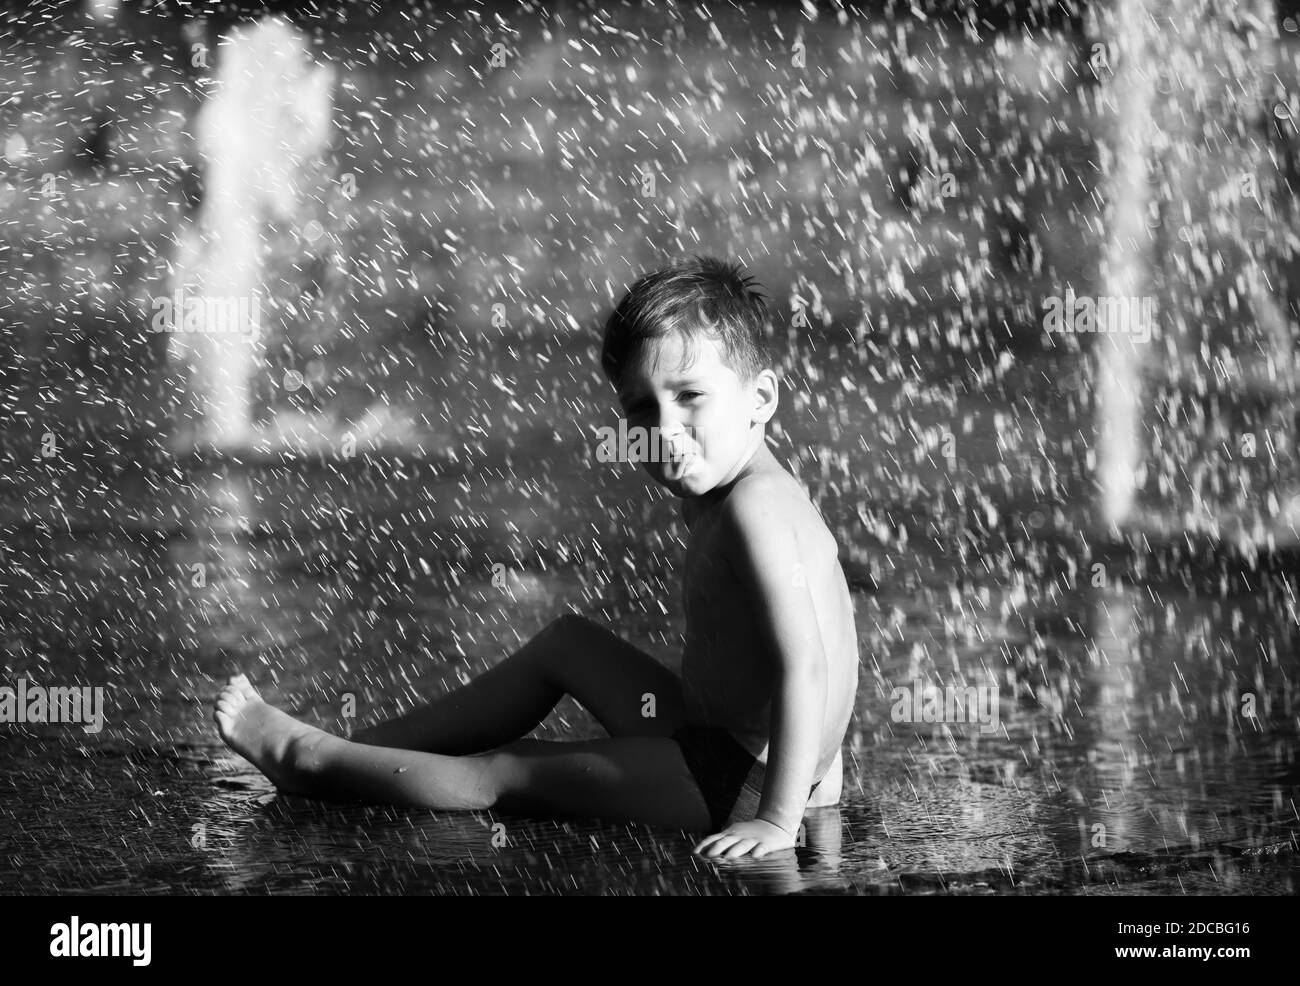 3 Jahre alter glücklicher Junge, der in einem Springbrunnen spielt und an einem heißen Tag die kühlen Wasserströme genießt. Heißer Sommer. Stockfoto